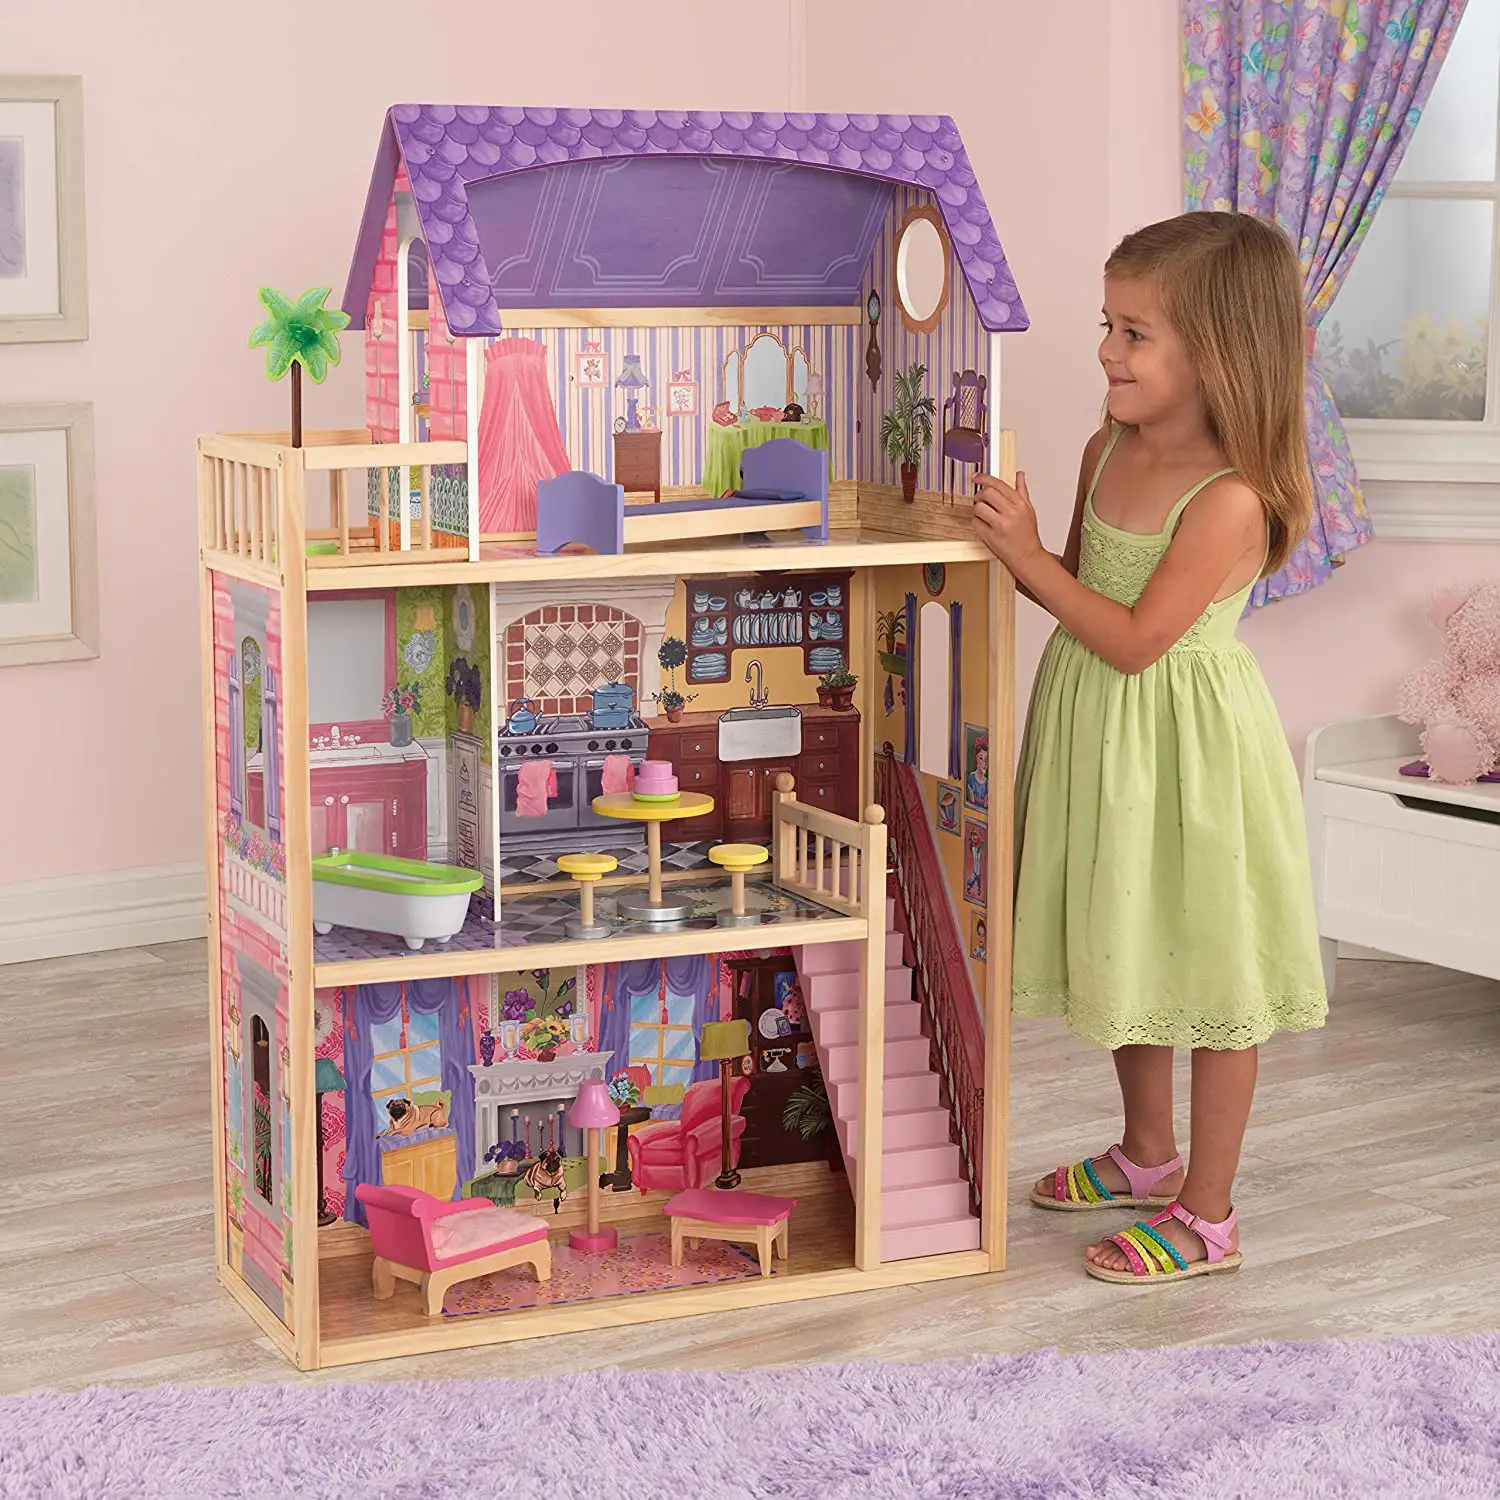 Maison de poupée en bois bricolage accessoires jouet Villa jeu de rôle jouets éducatifs maisons de poupée meubles en bois pour bébé jouets enfants